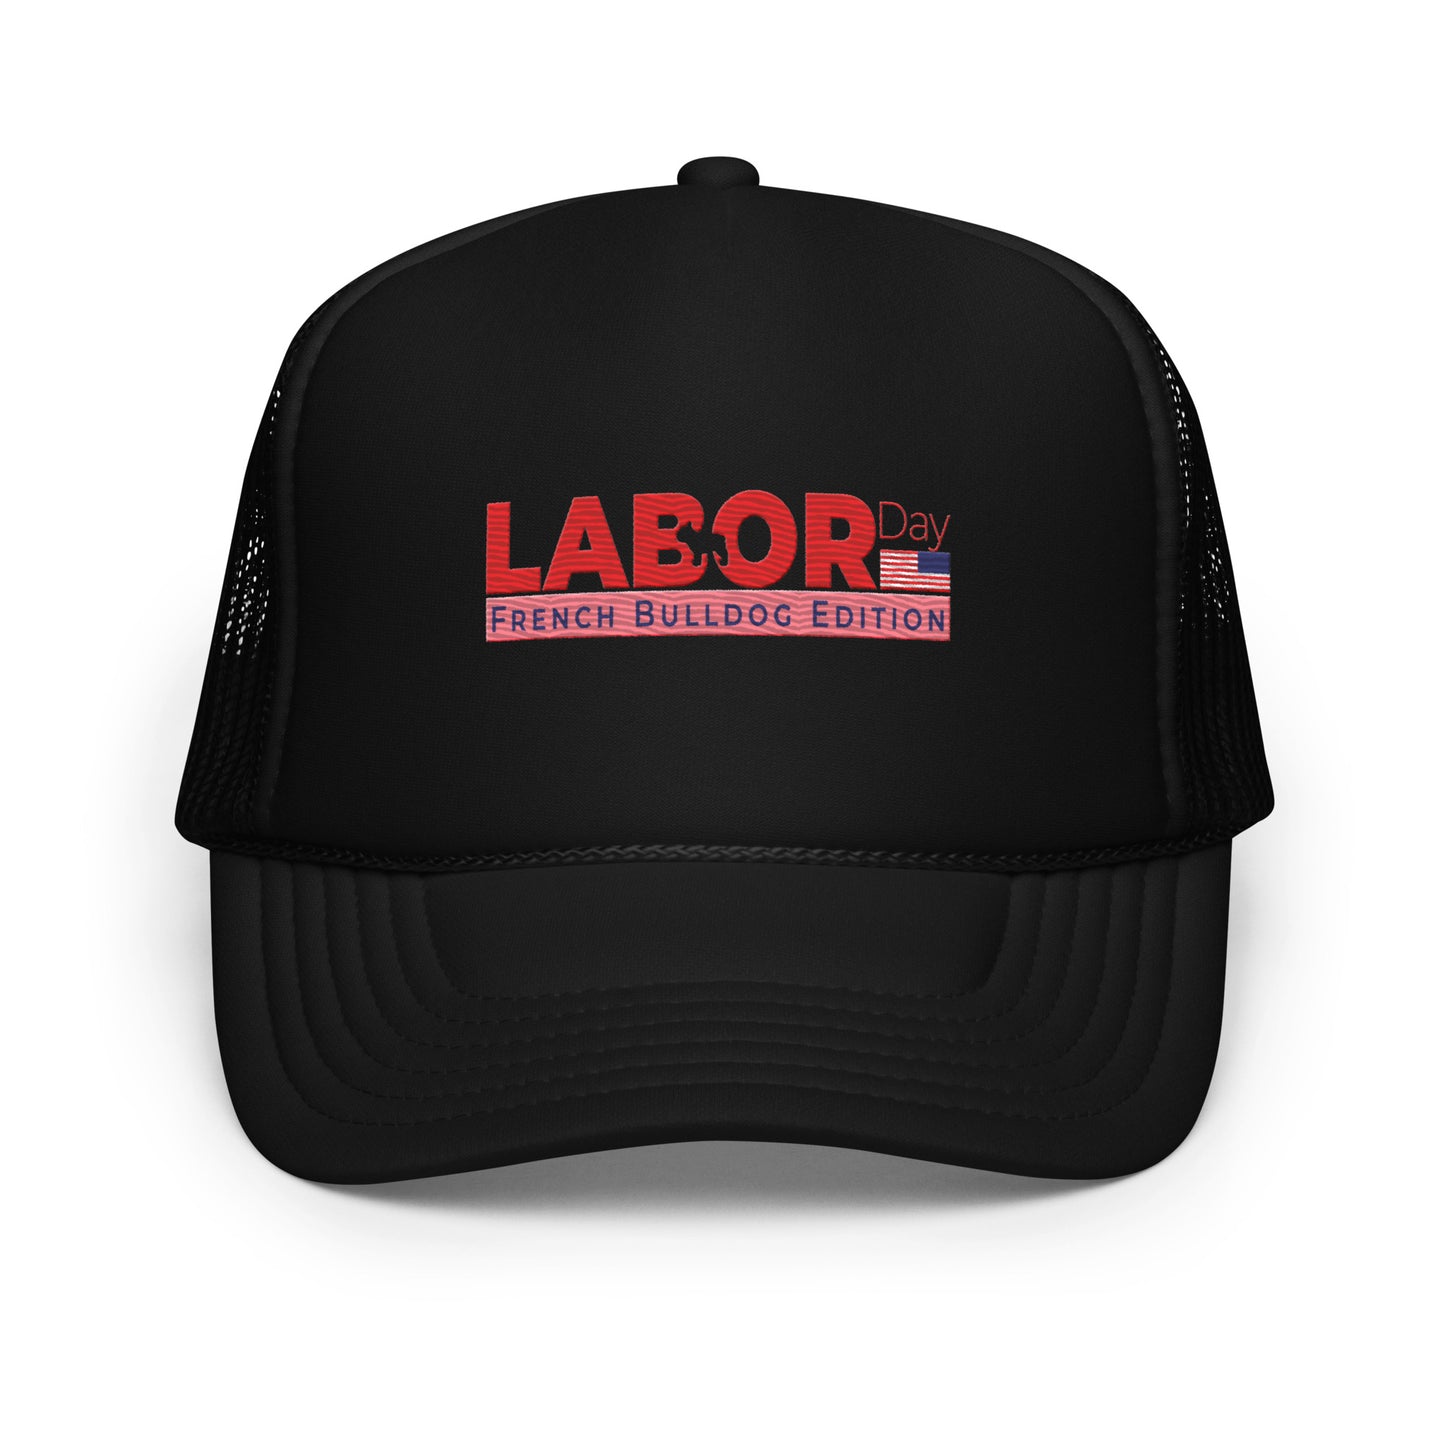 Labor Day - Foam trucker hat